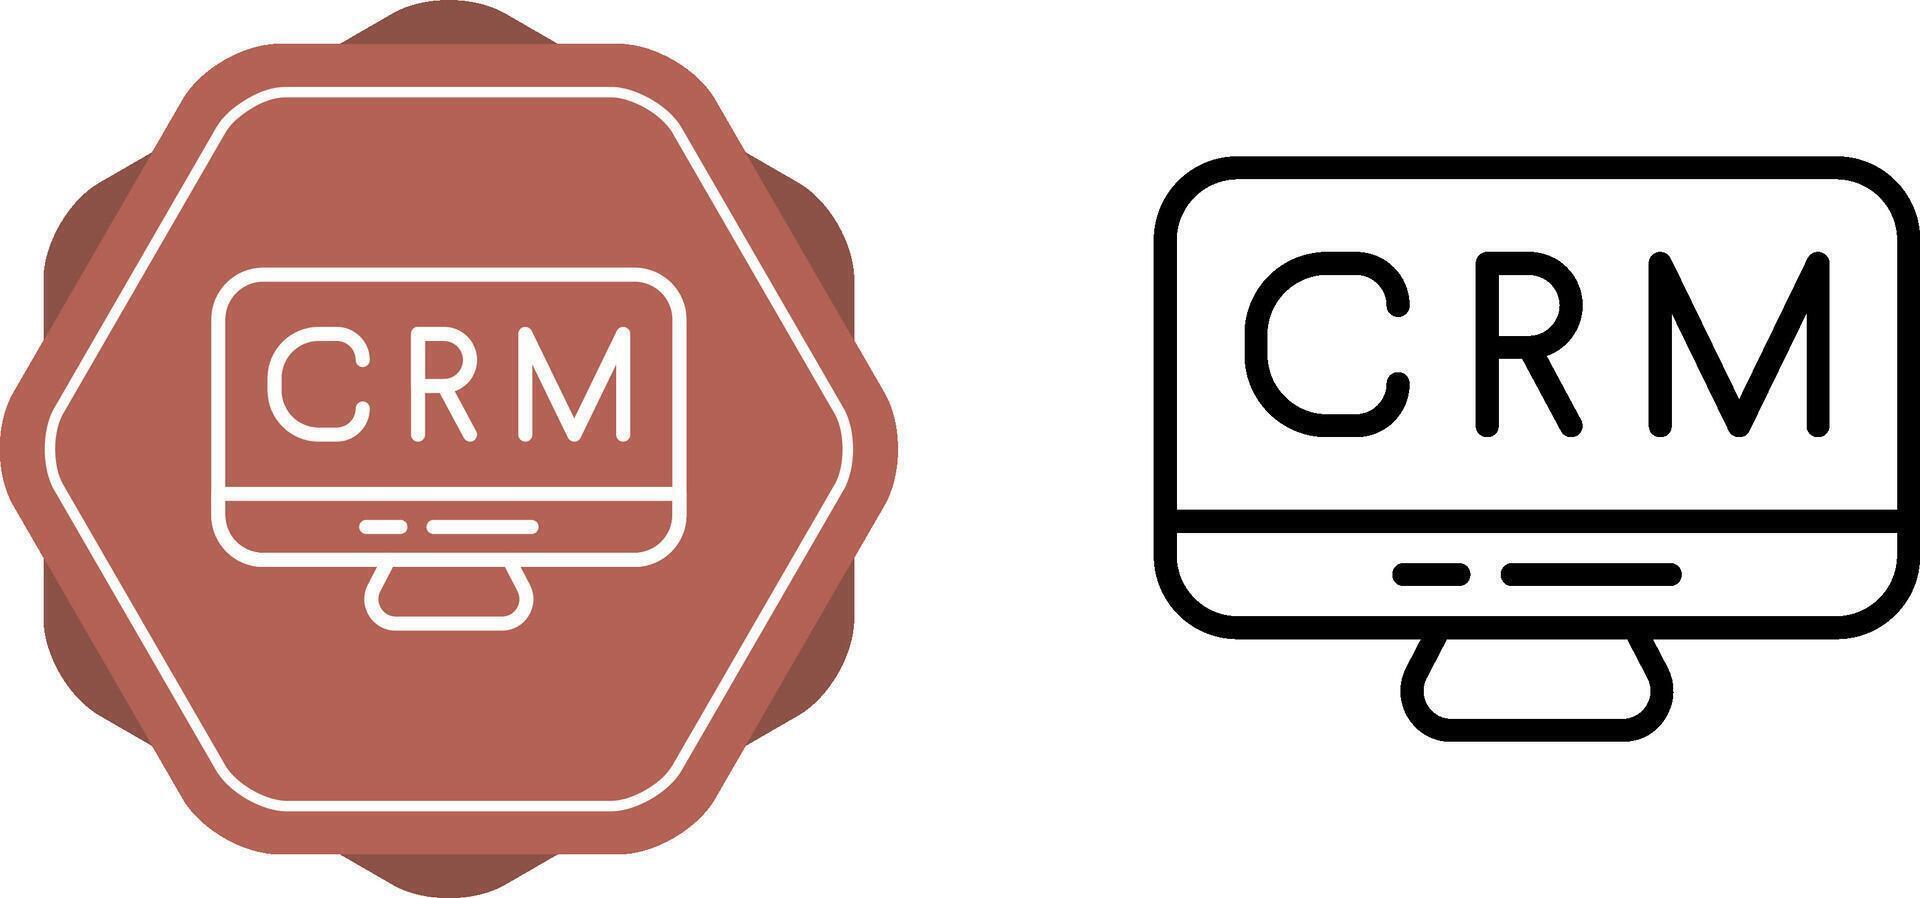 CRM Analytics Vector Icon